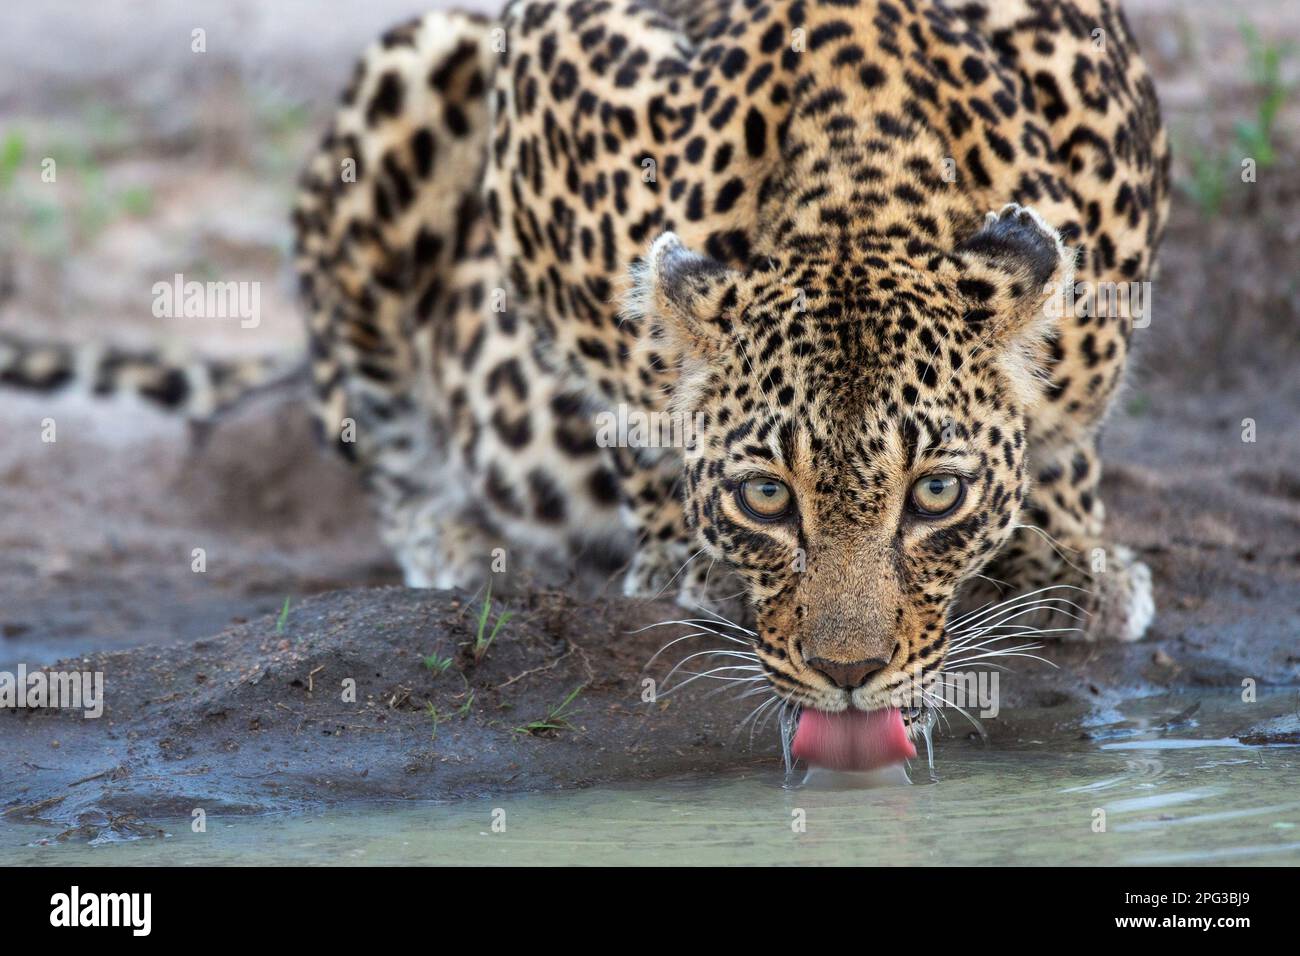 Vue frontale du léopard femelle (Panthera pardus) buvant dans une casserole naturelle Banque D'Images